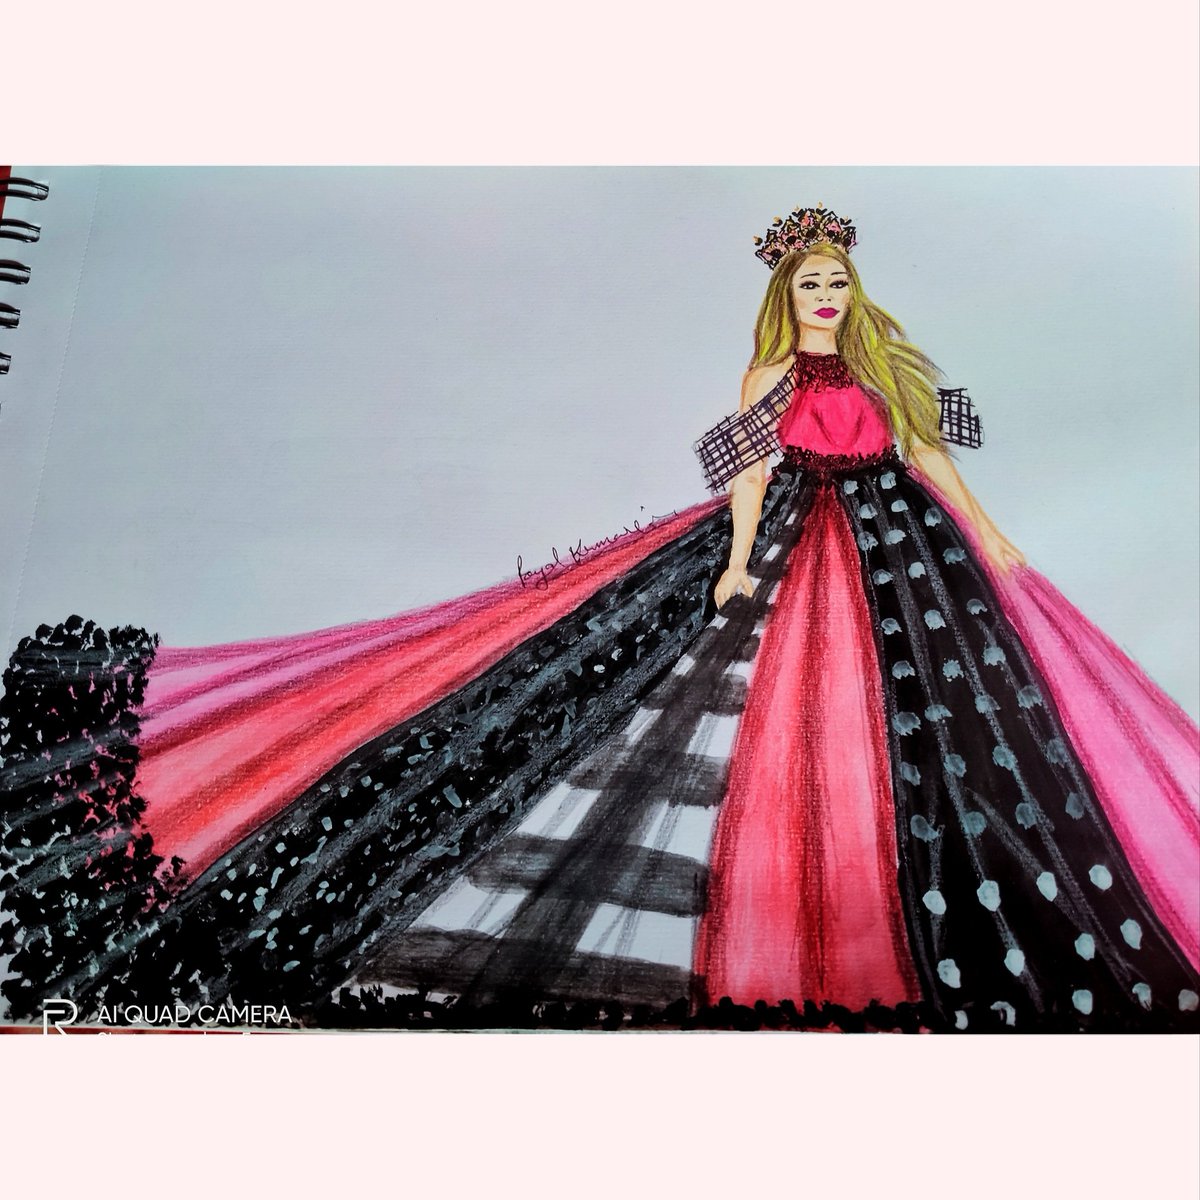 Beautiful #queen ❤️👸❤️
💞💞💞💞💞💞💞💞💞💞
@fashionfusion
@hey_FIG
@LearnFromManish @LSTLondon
..@PayalKu77146190
..#HappyDiwali2020 #payalillustration #happydiwali  #art #artist #fashiondesigners #fashiondesign #illustrator #illustration